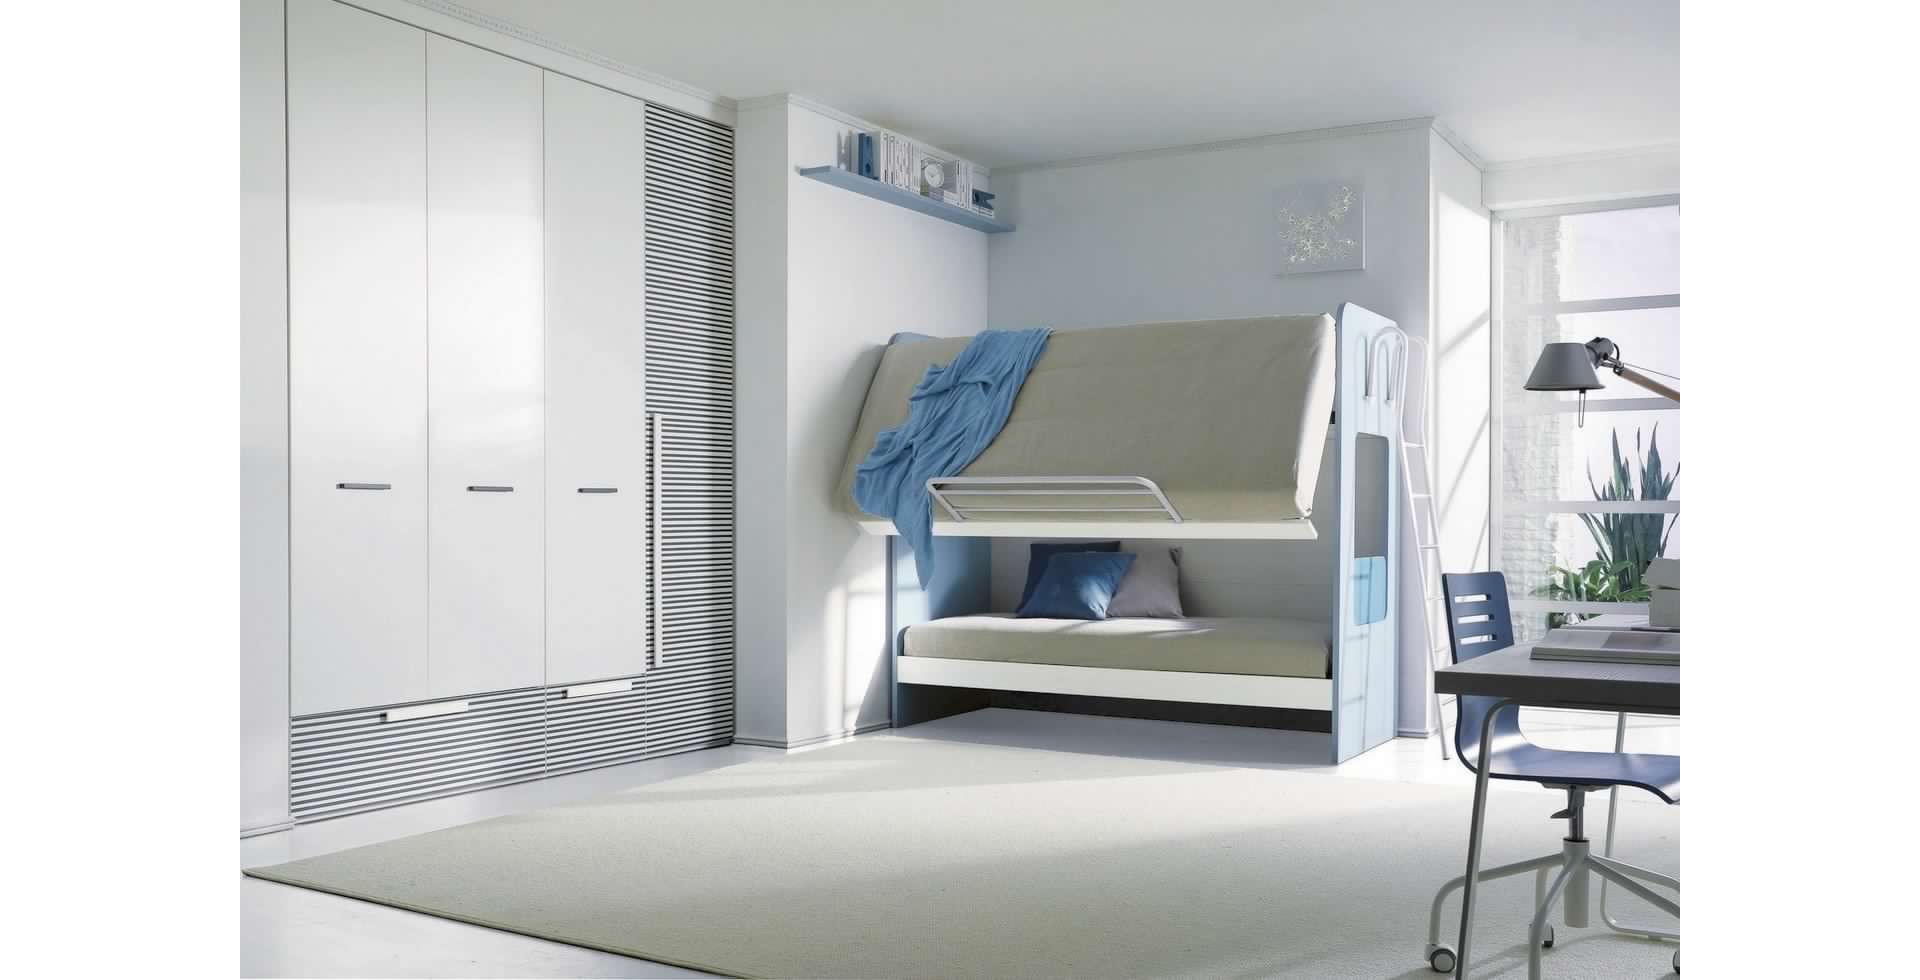 Massima funzionalità e praticita d'utilizzo a 360°, rifare il letto superiore ora è più semplice!